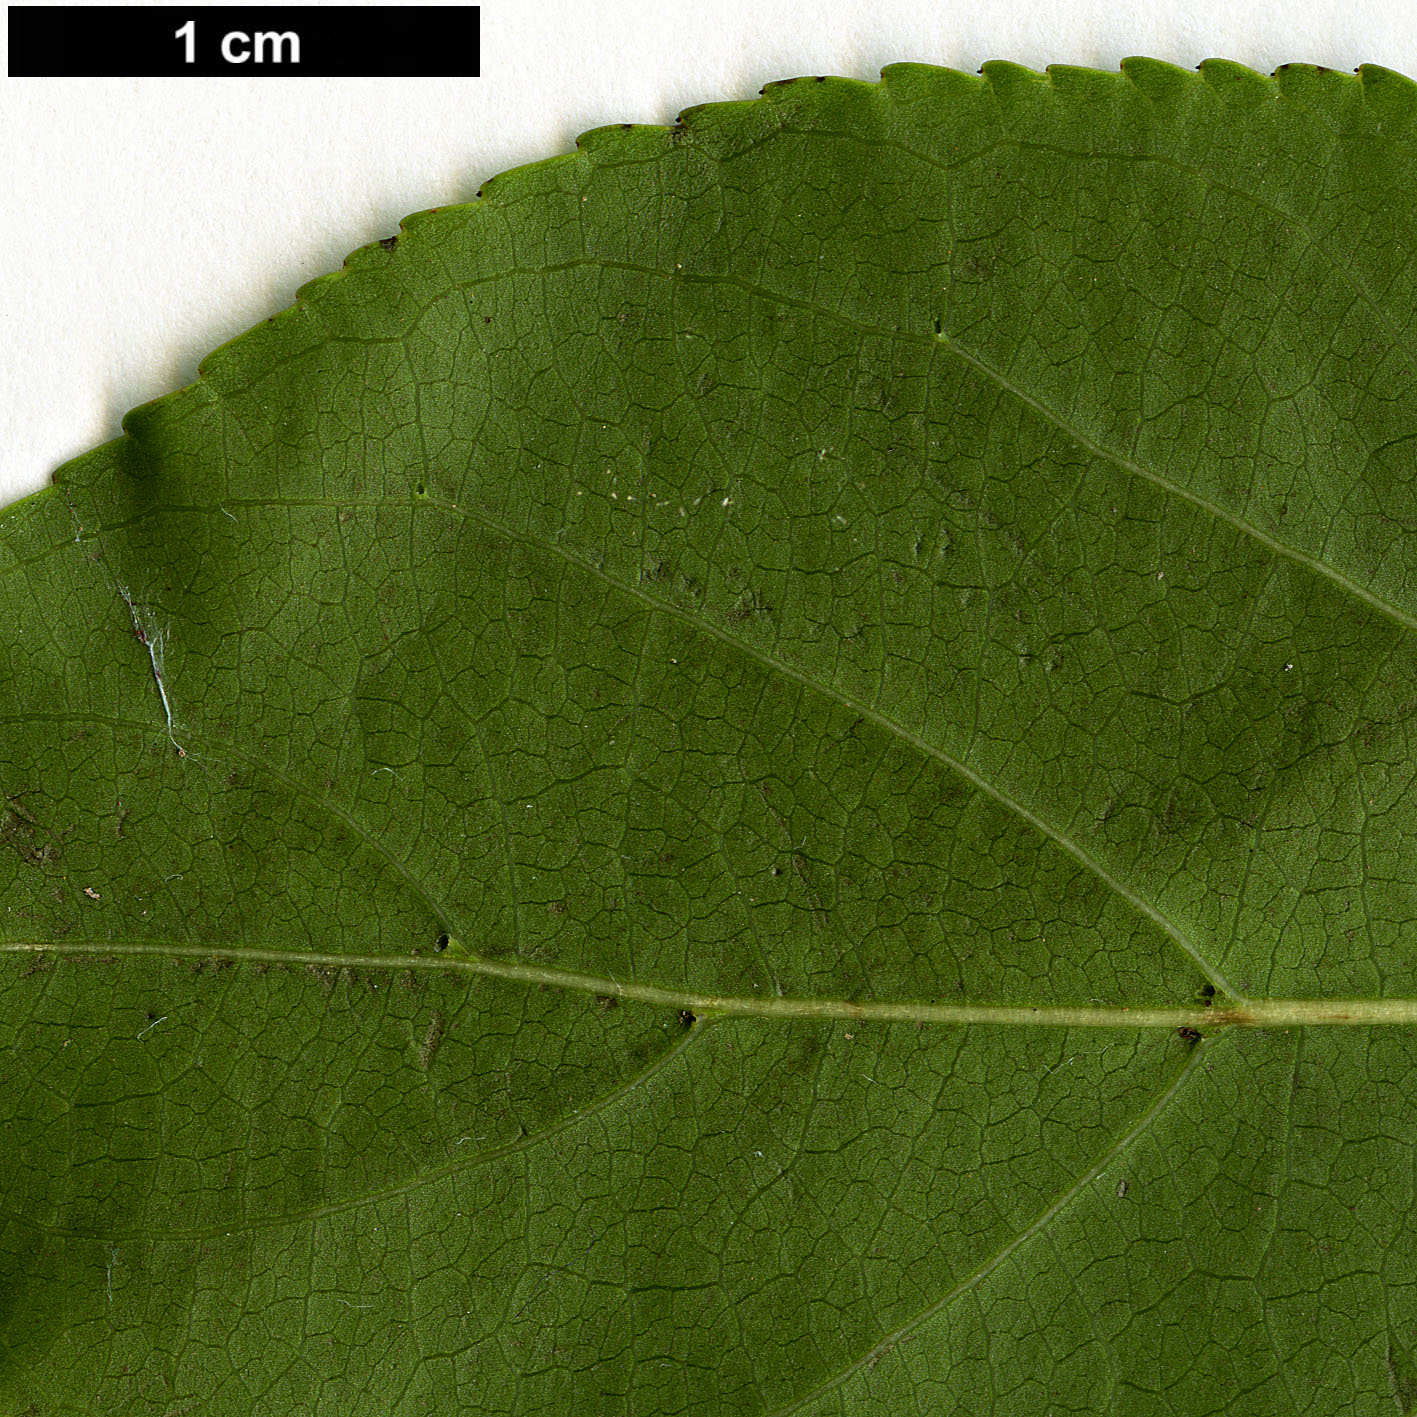 High resolution image: Family: Phyllanthaceae - Genus: Bischofia - Taxon: javanica